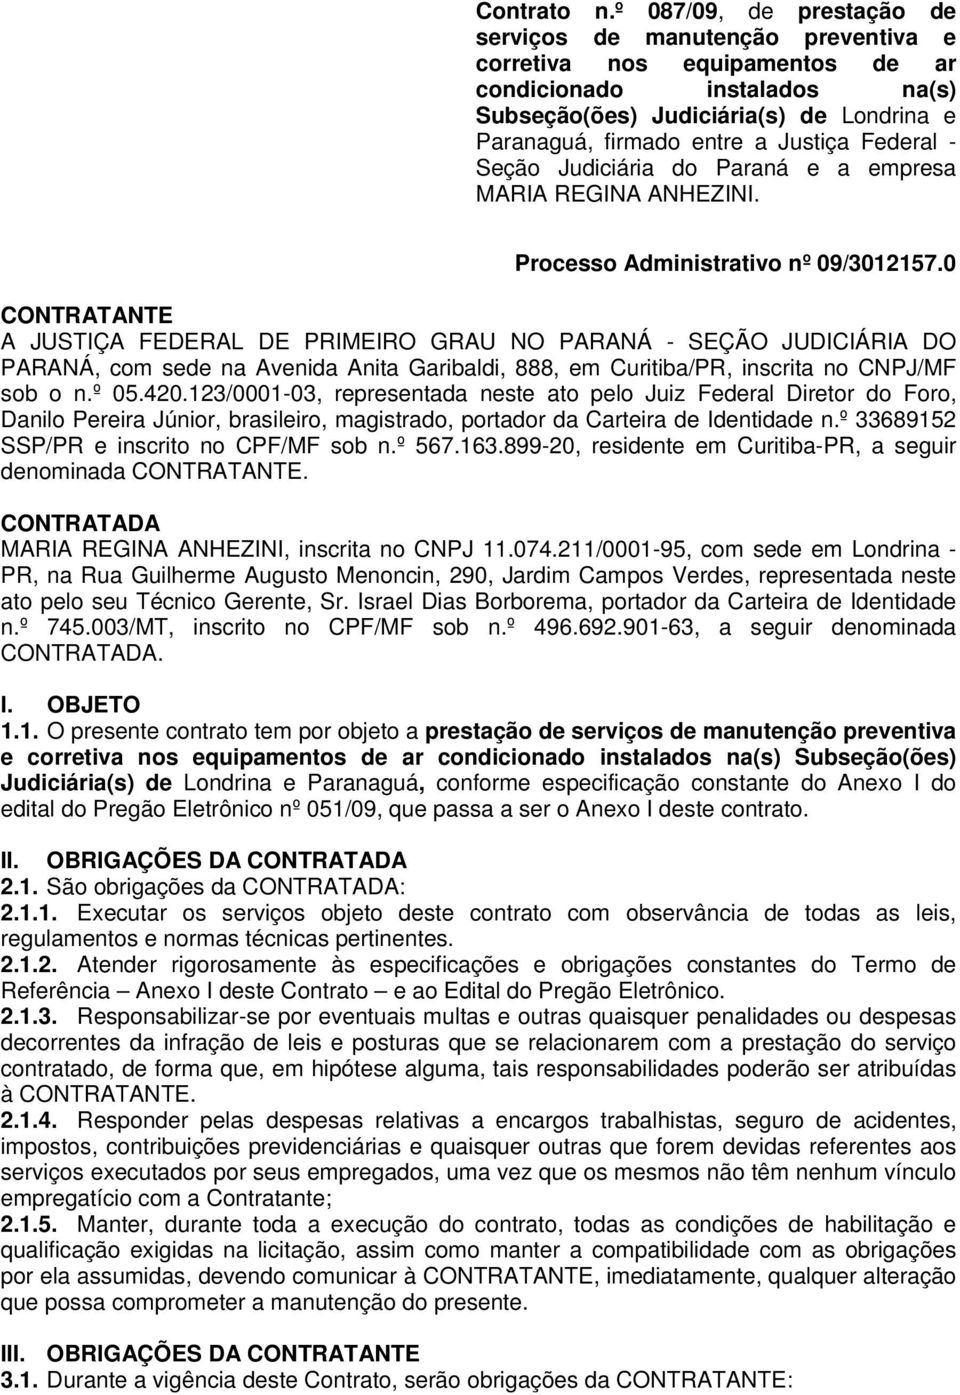 Justiça Federal - Seção Judiciária do Paraná e a empresa MARIA REGINA ANHEZINI. Processo Administrativo nº 09/3012157.